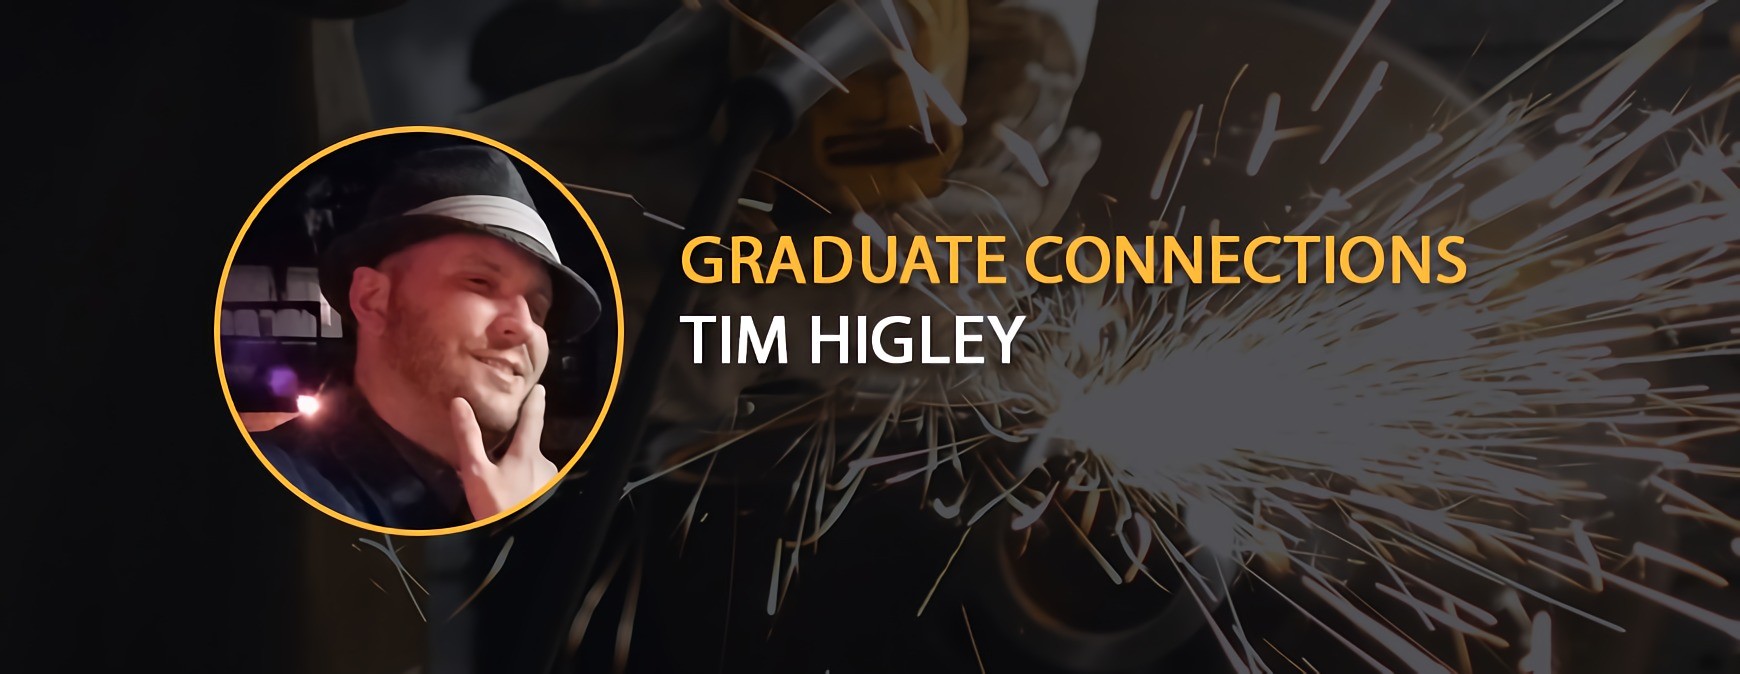 Graduate Connections - Meet Tim Higley - Tulsa Welding School